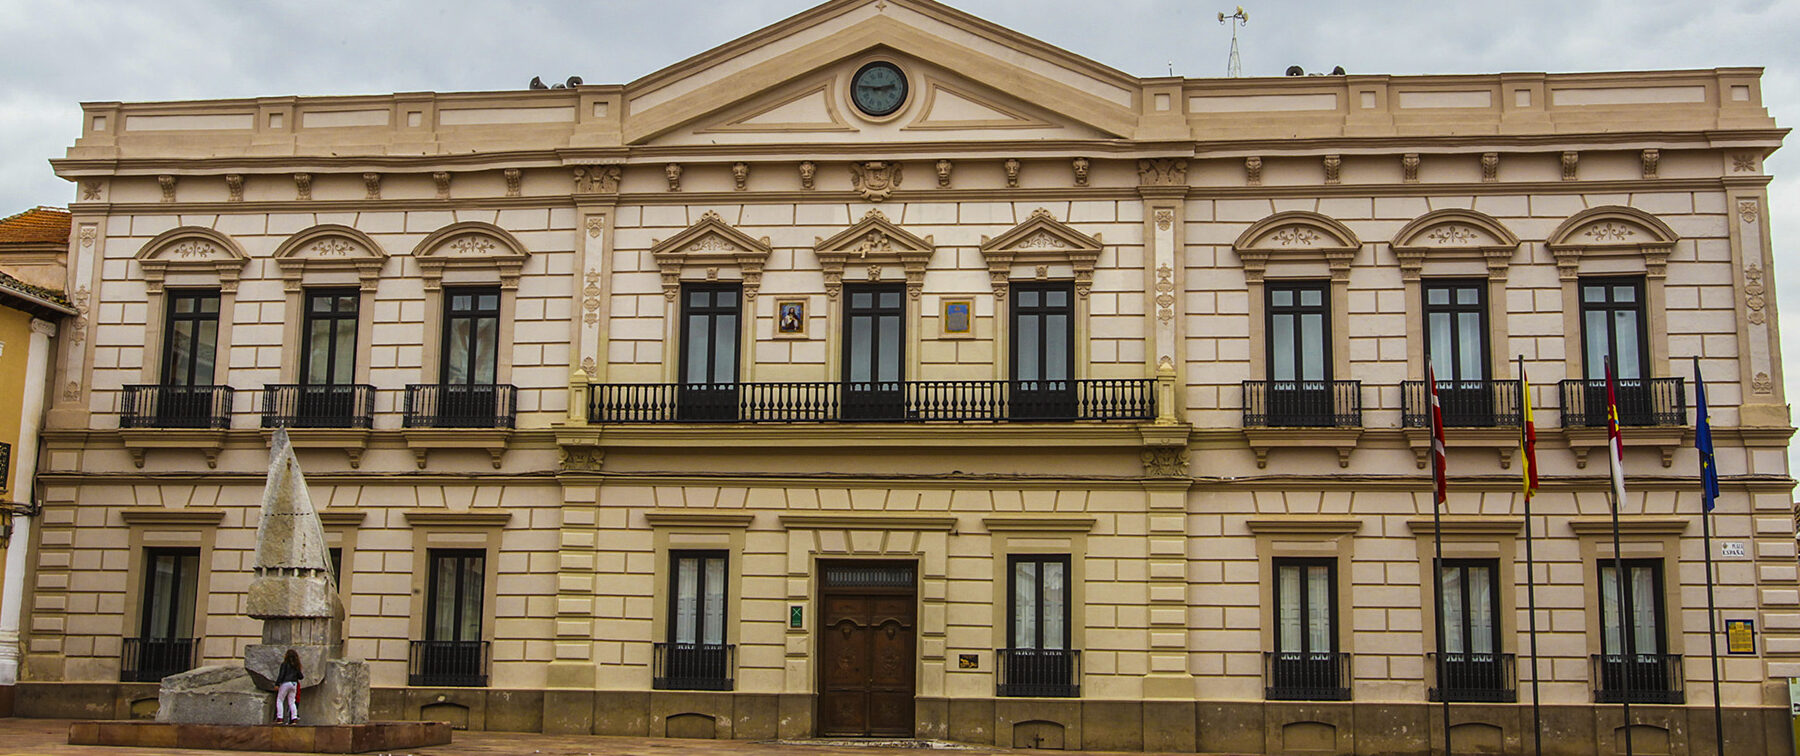 MUSEO MUNICIPAL DE ALCÁZAR DE SAN JUAN		Alcázar de San Juan	Ciudad Real	Museo